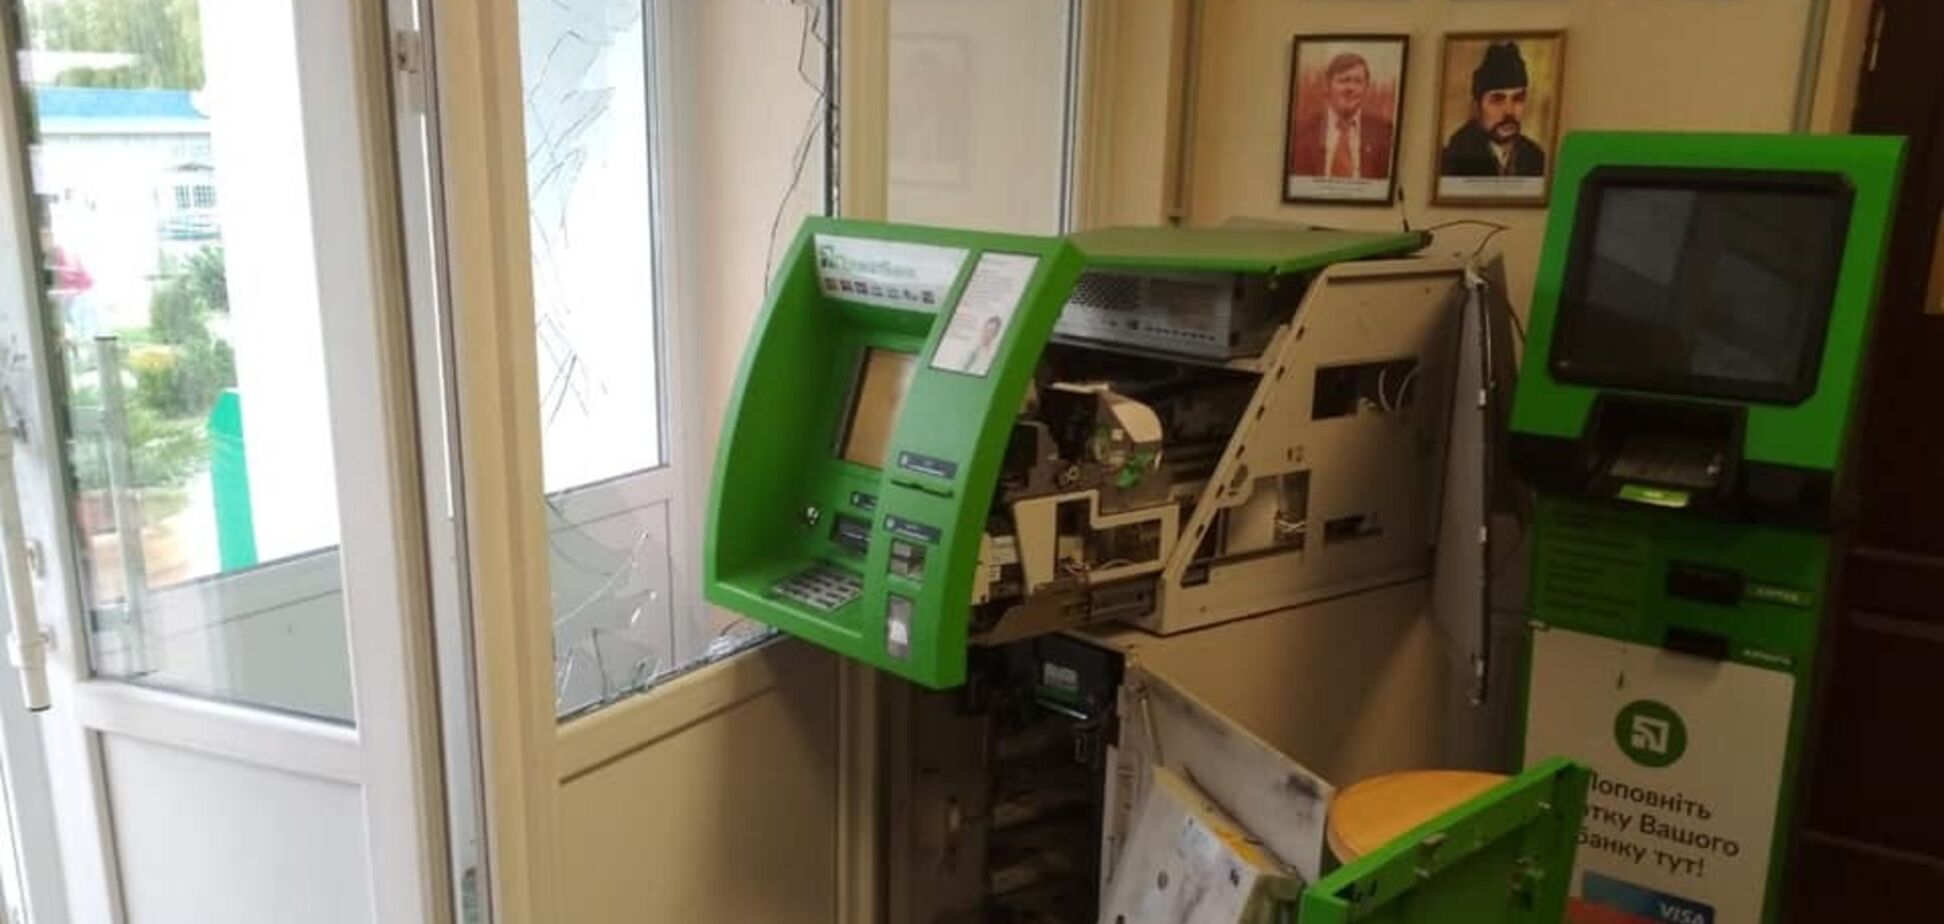 Під Дніпром банда розкрила банкомат і підірвала офіс.Оголошено винагороду